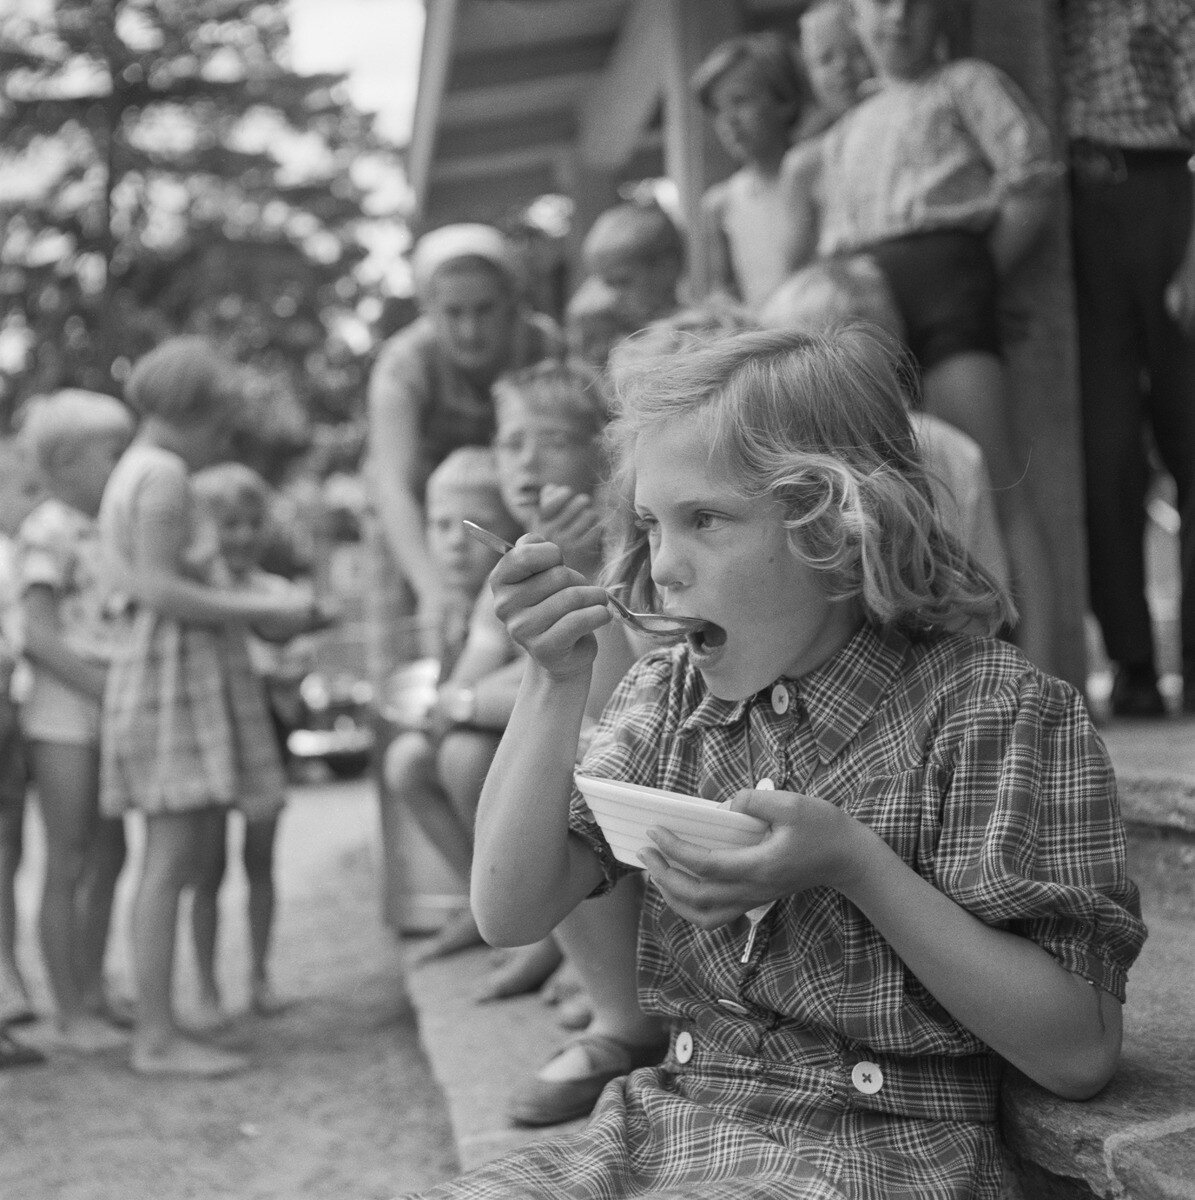 Kuva 3. Lapset leikinohjaajien hoivissa. Lapset osallistuvat puistoruokailuun leikkipuistossa kesällä 1955 todennäköisesti Käpylän Kimmon leikkikentällä. Kuvaaja Saarinen, UA. JOKA, Museovirasto.